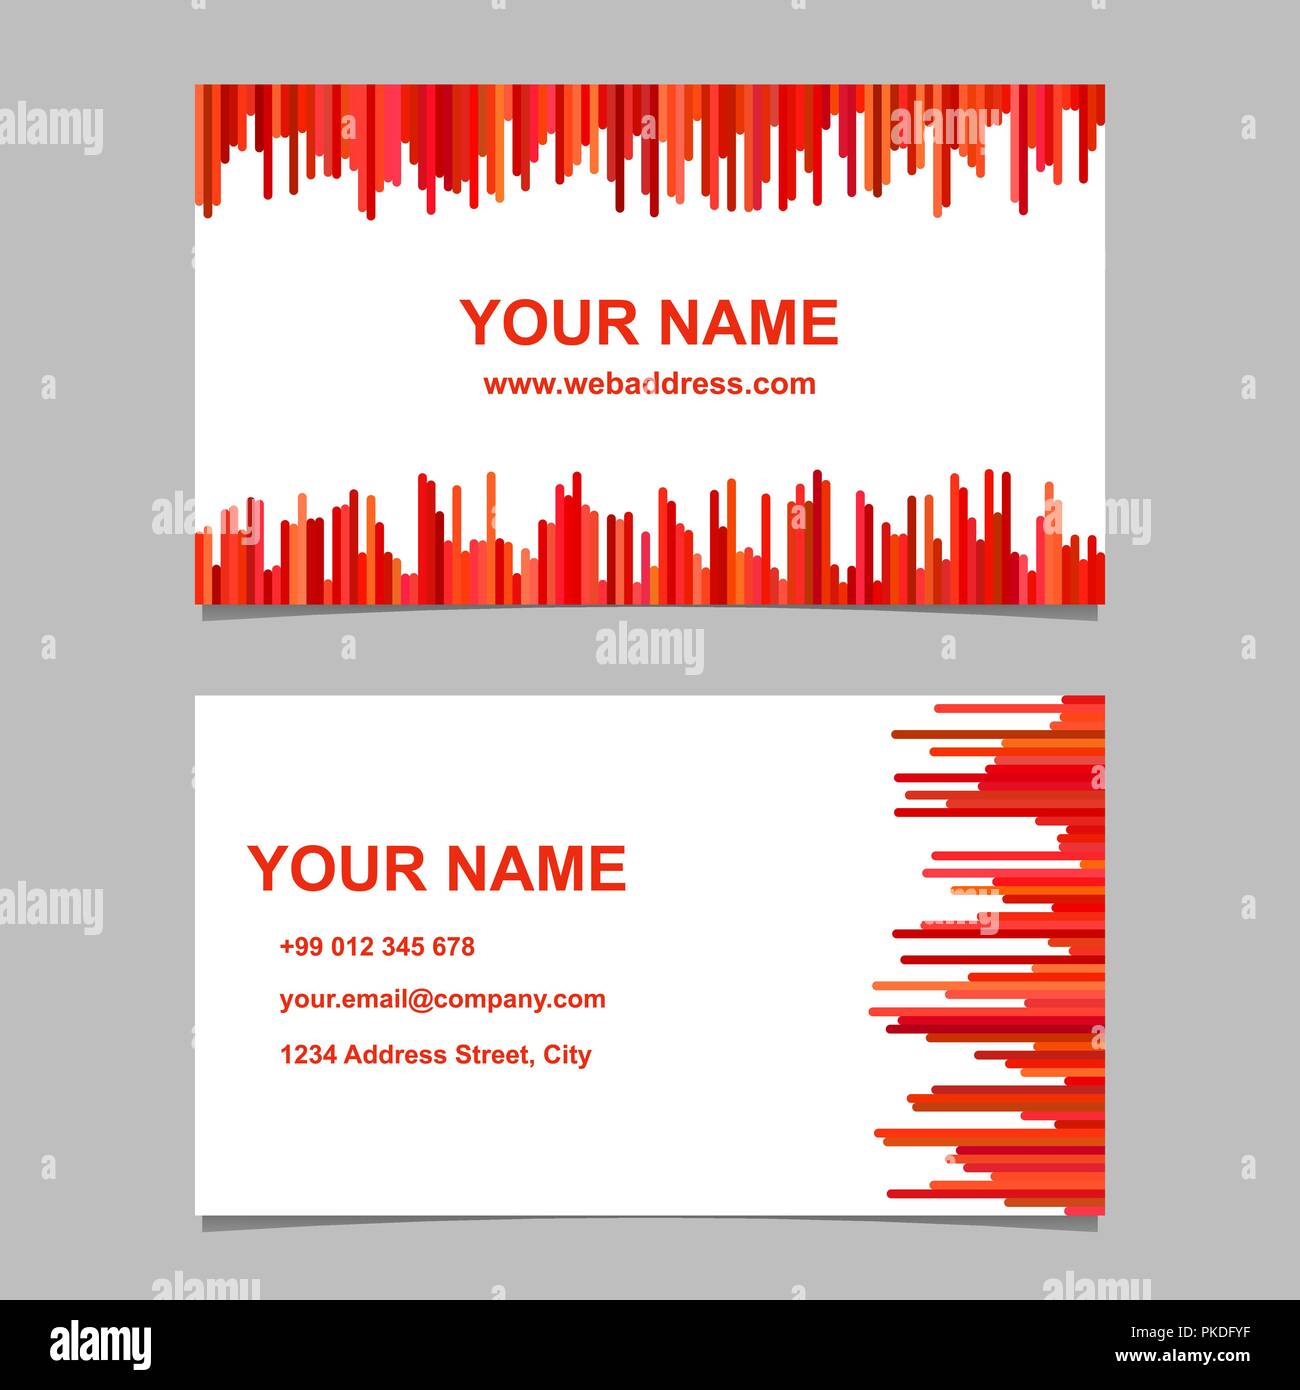 Business card template design set - vettore design biglietti da visita con orizzontale e strisce verticali nei toni del rosso Illustrazione Vettoriale